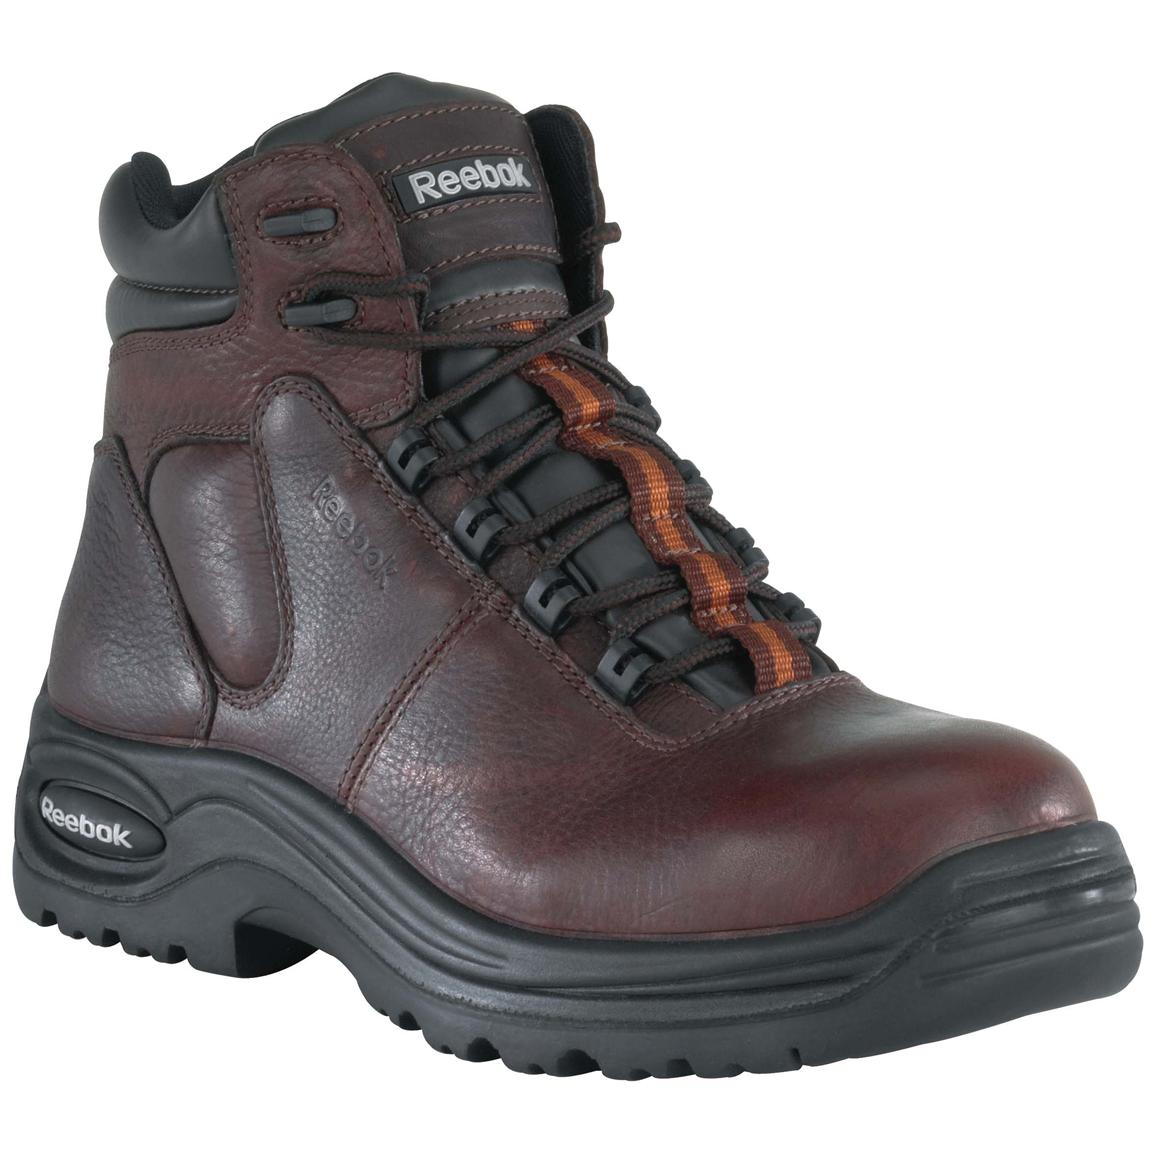 Women's Reebok 6 inch Composite Safety Toe Sport Boots, Dark Brown